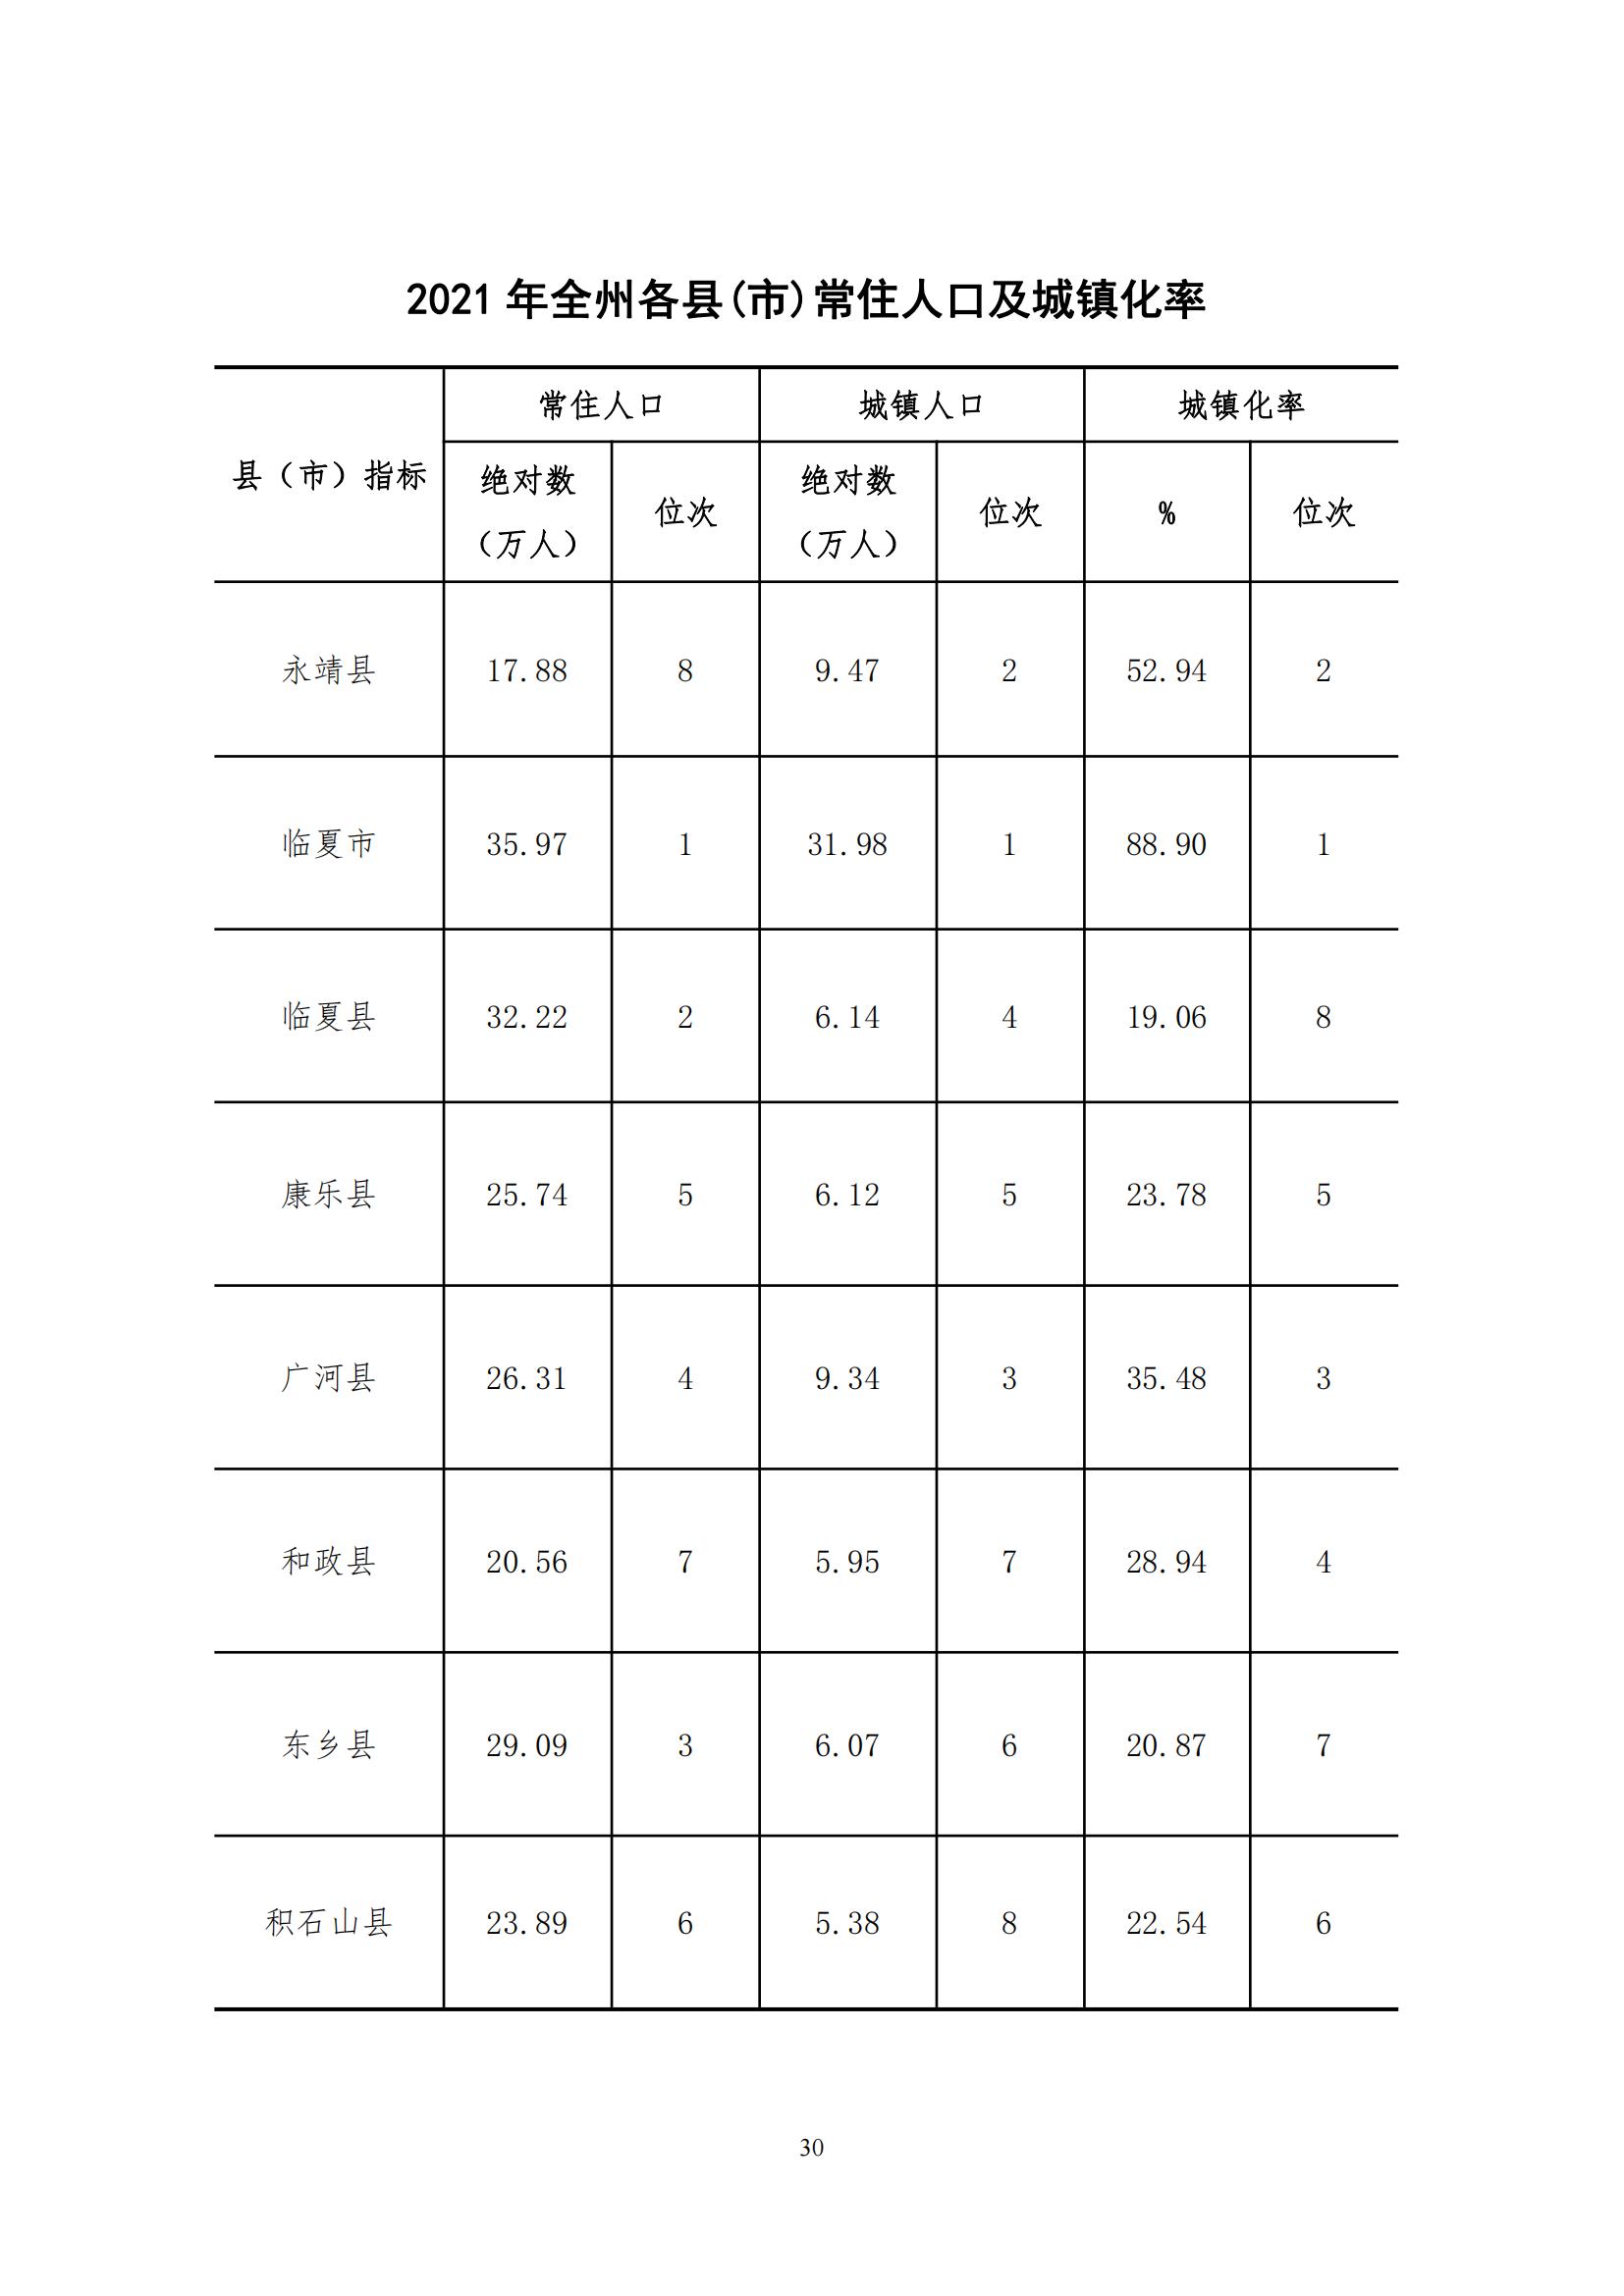 2021年永靖县国民经济和社会发展统计公报_29.jpg